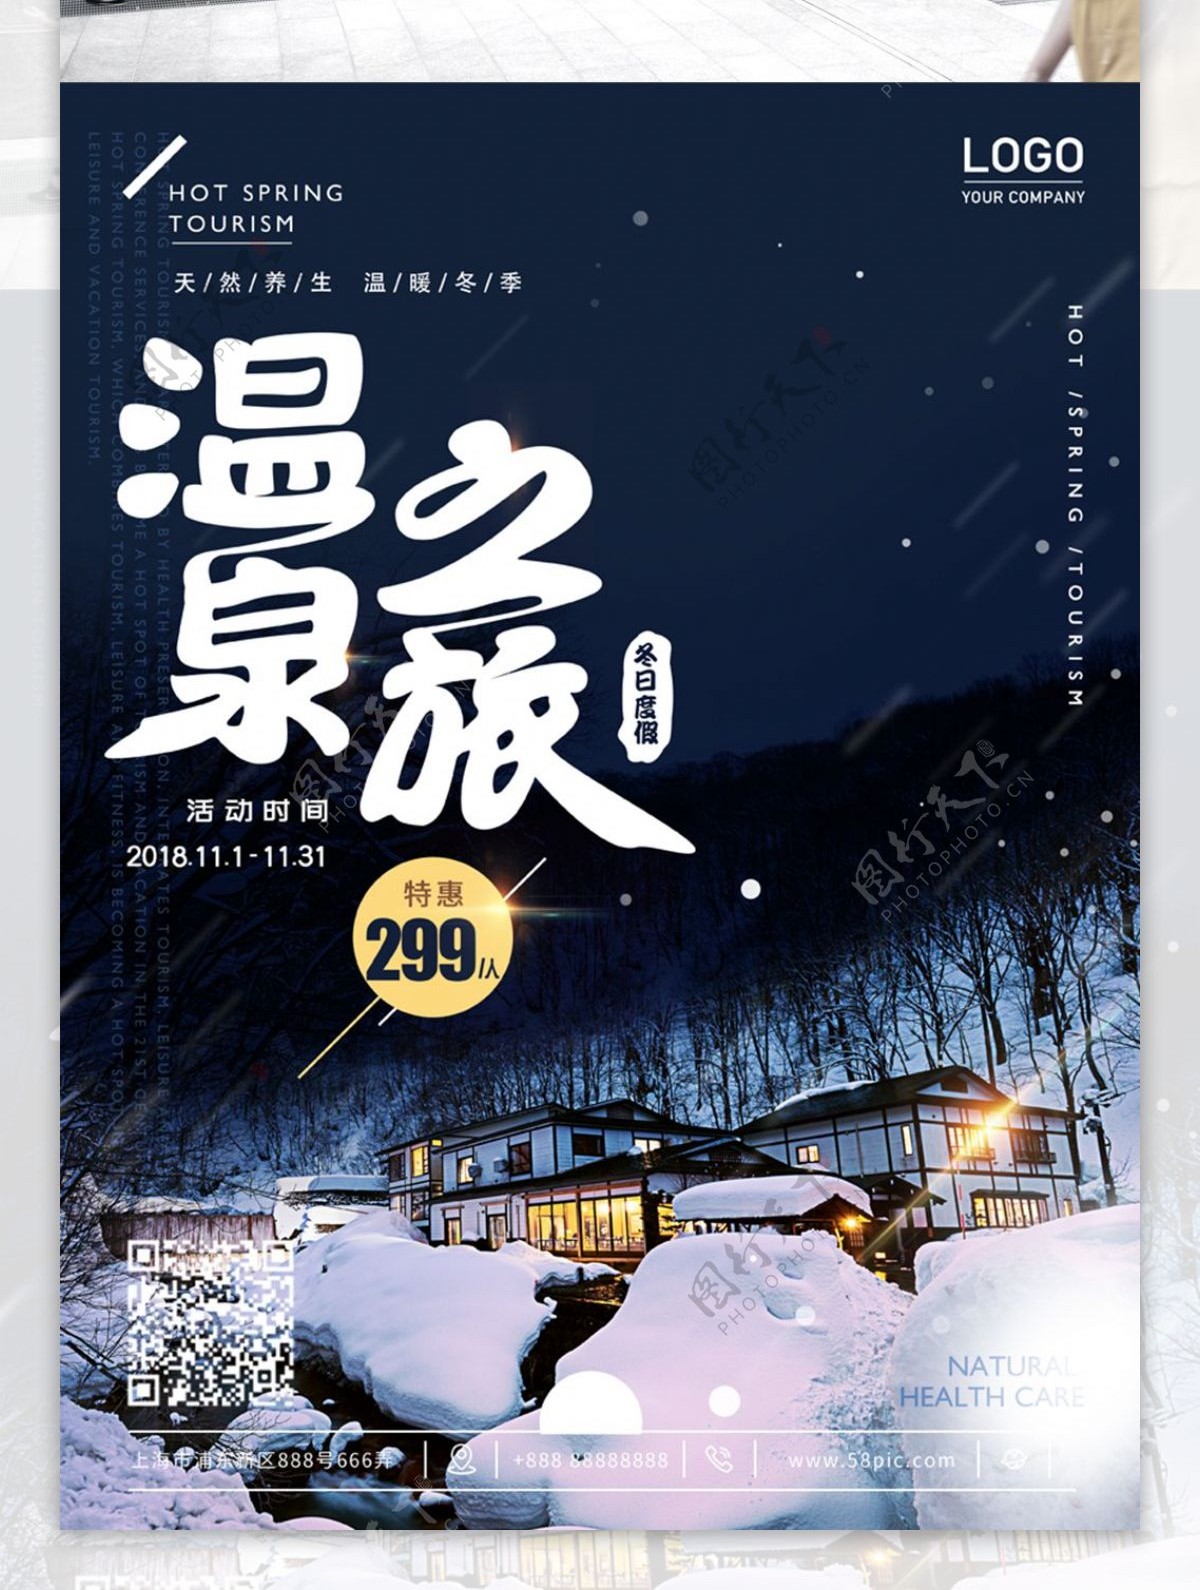 原创冬季温泉旅行酒店养生温泉促销打折海报